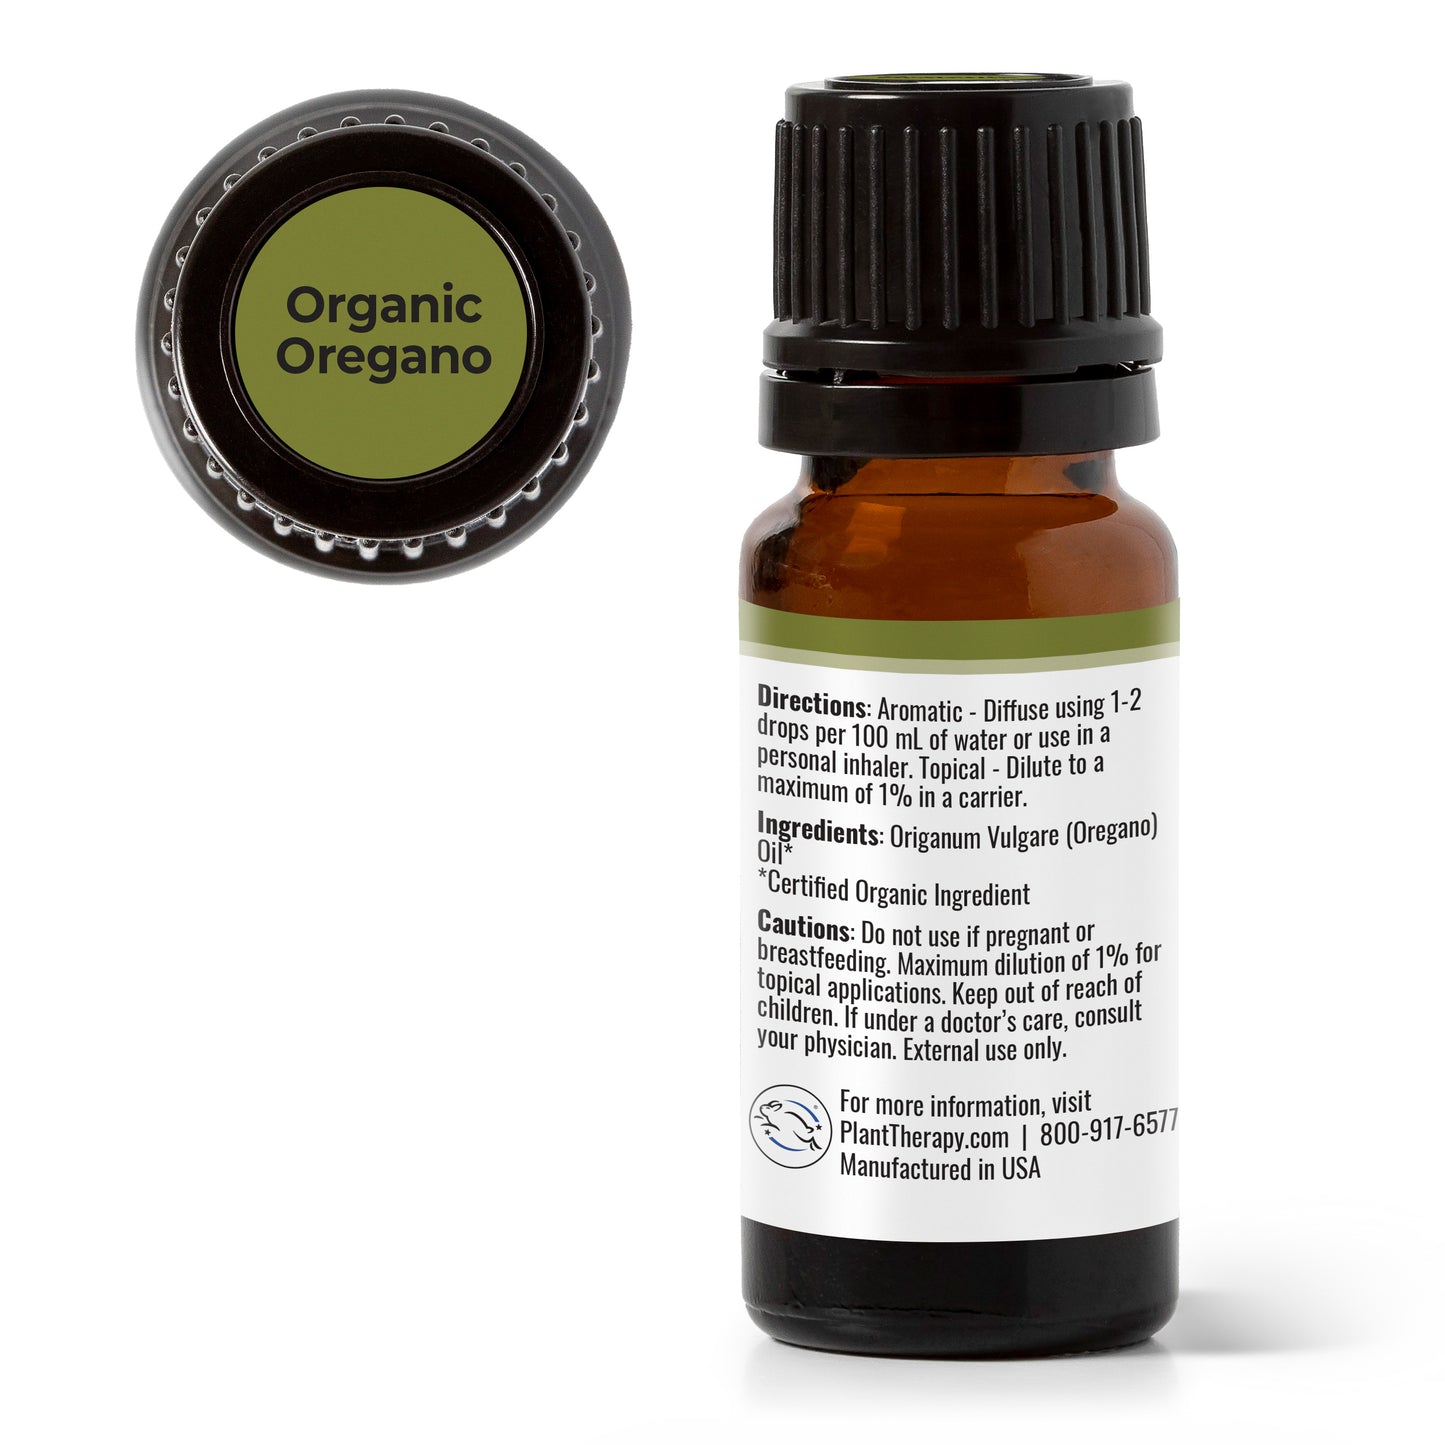 Organic Oregano Essential Oil back label